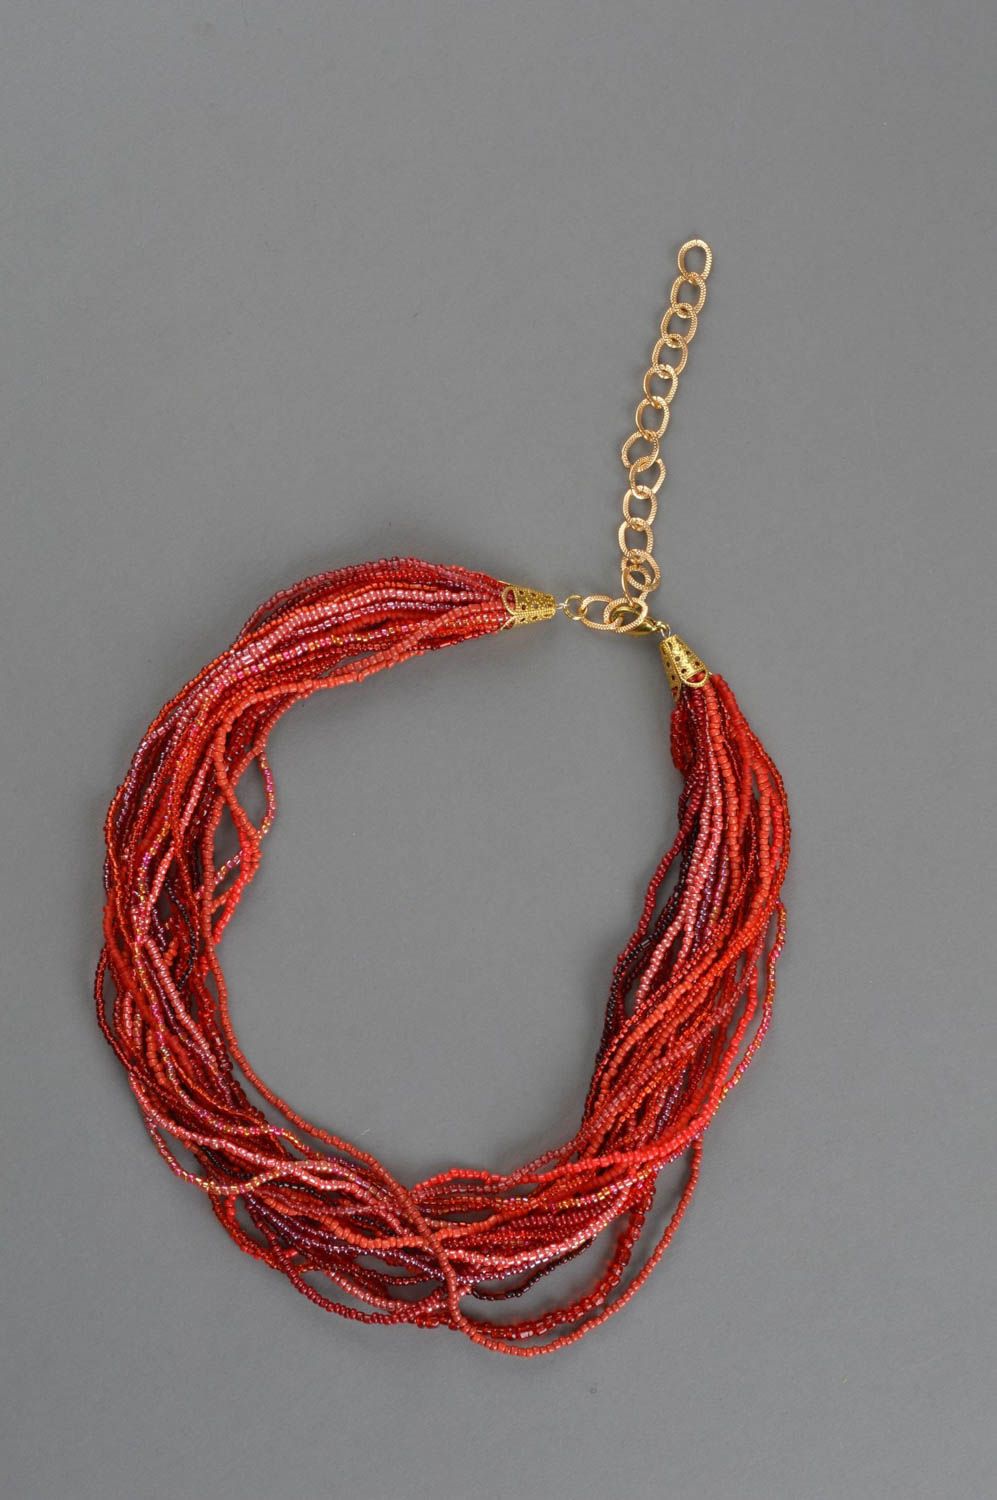 Ожерелье из бисера многорядное красное оригинальное ручной работы Волны фото 2